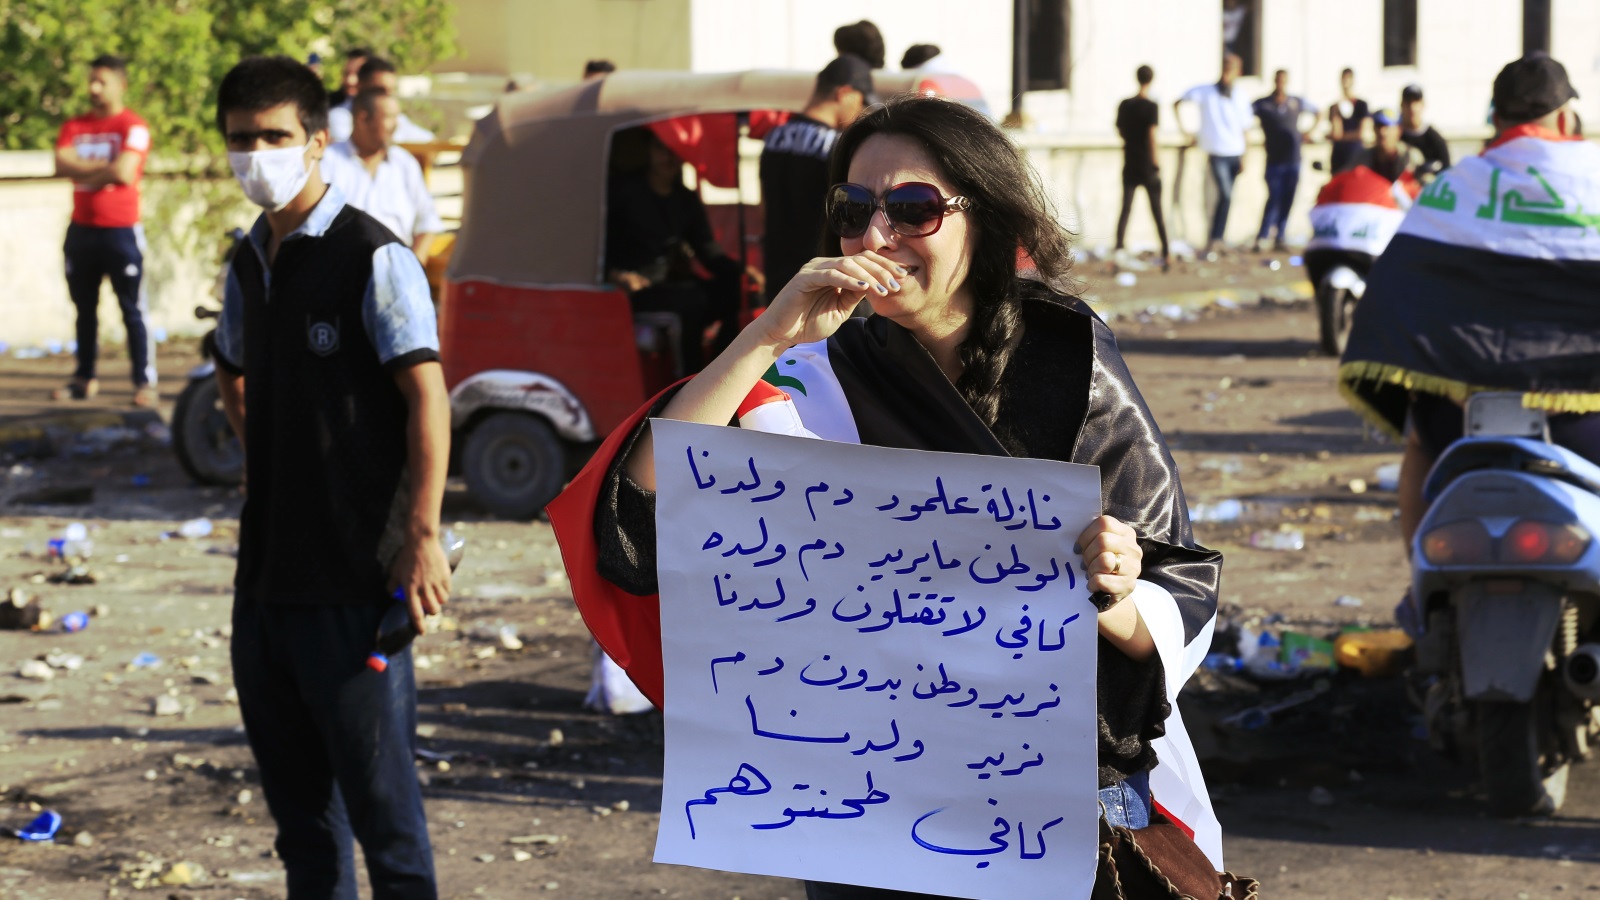 عراقية تشارك في الاحتجاجات ببغداد وترفع لوحة للتعبير عن رفض استخدام العنف ضد المتظاهرين (الأناضول)